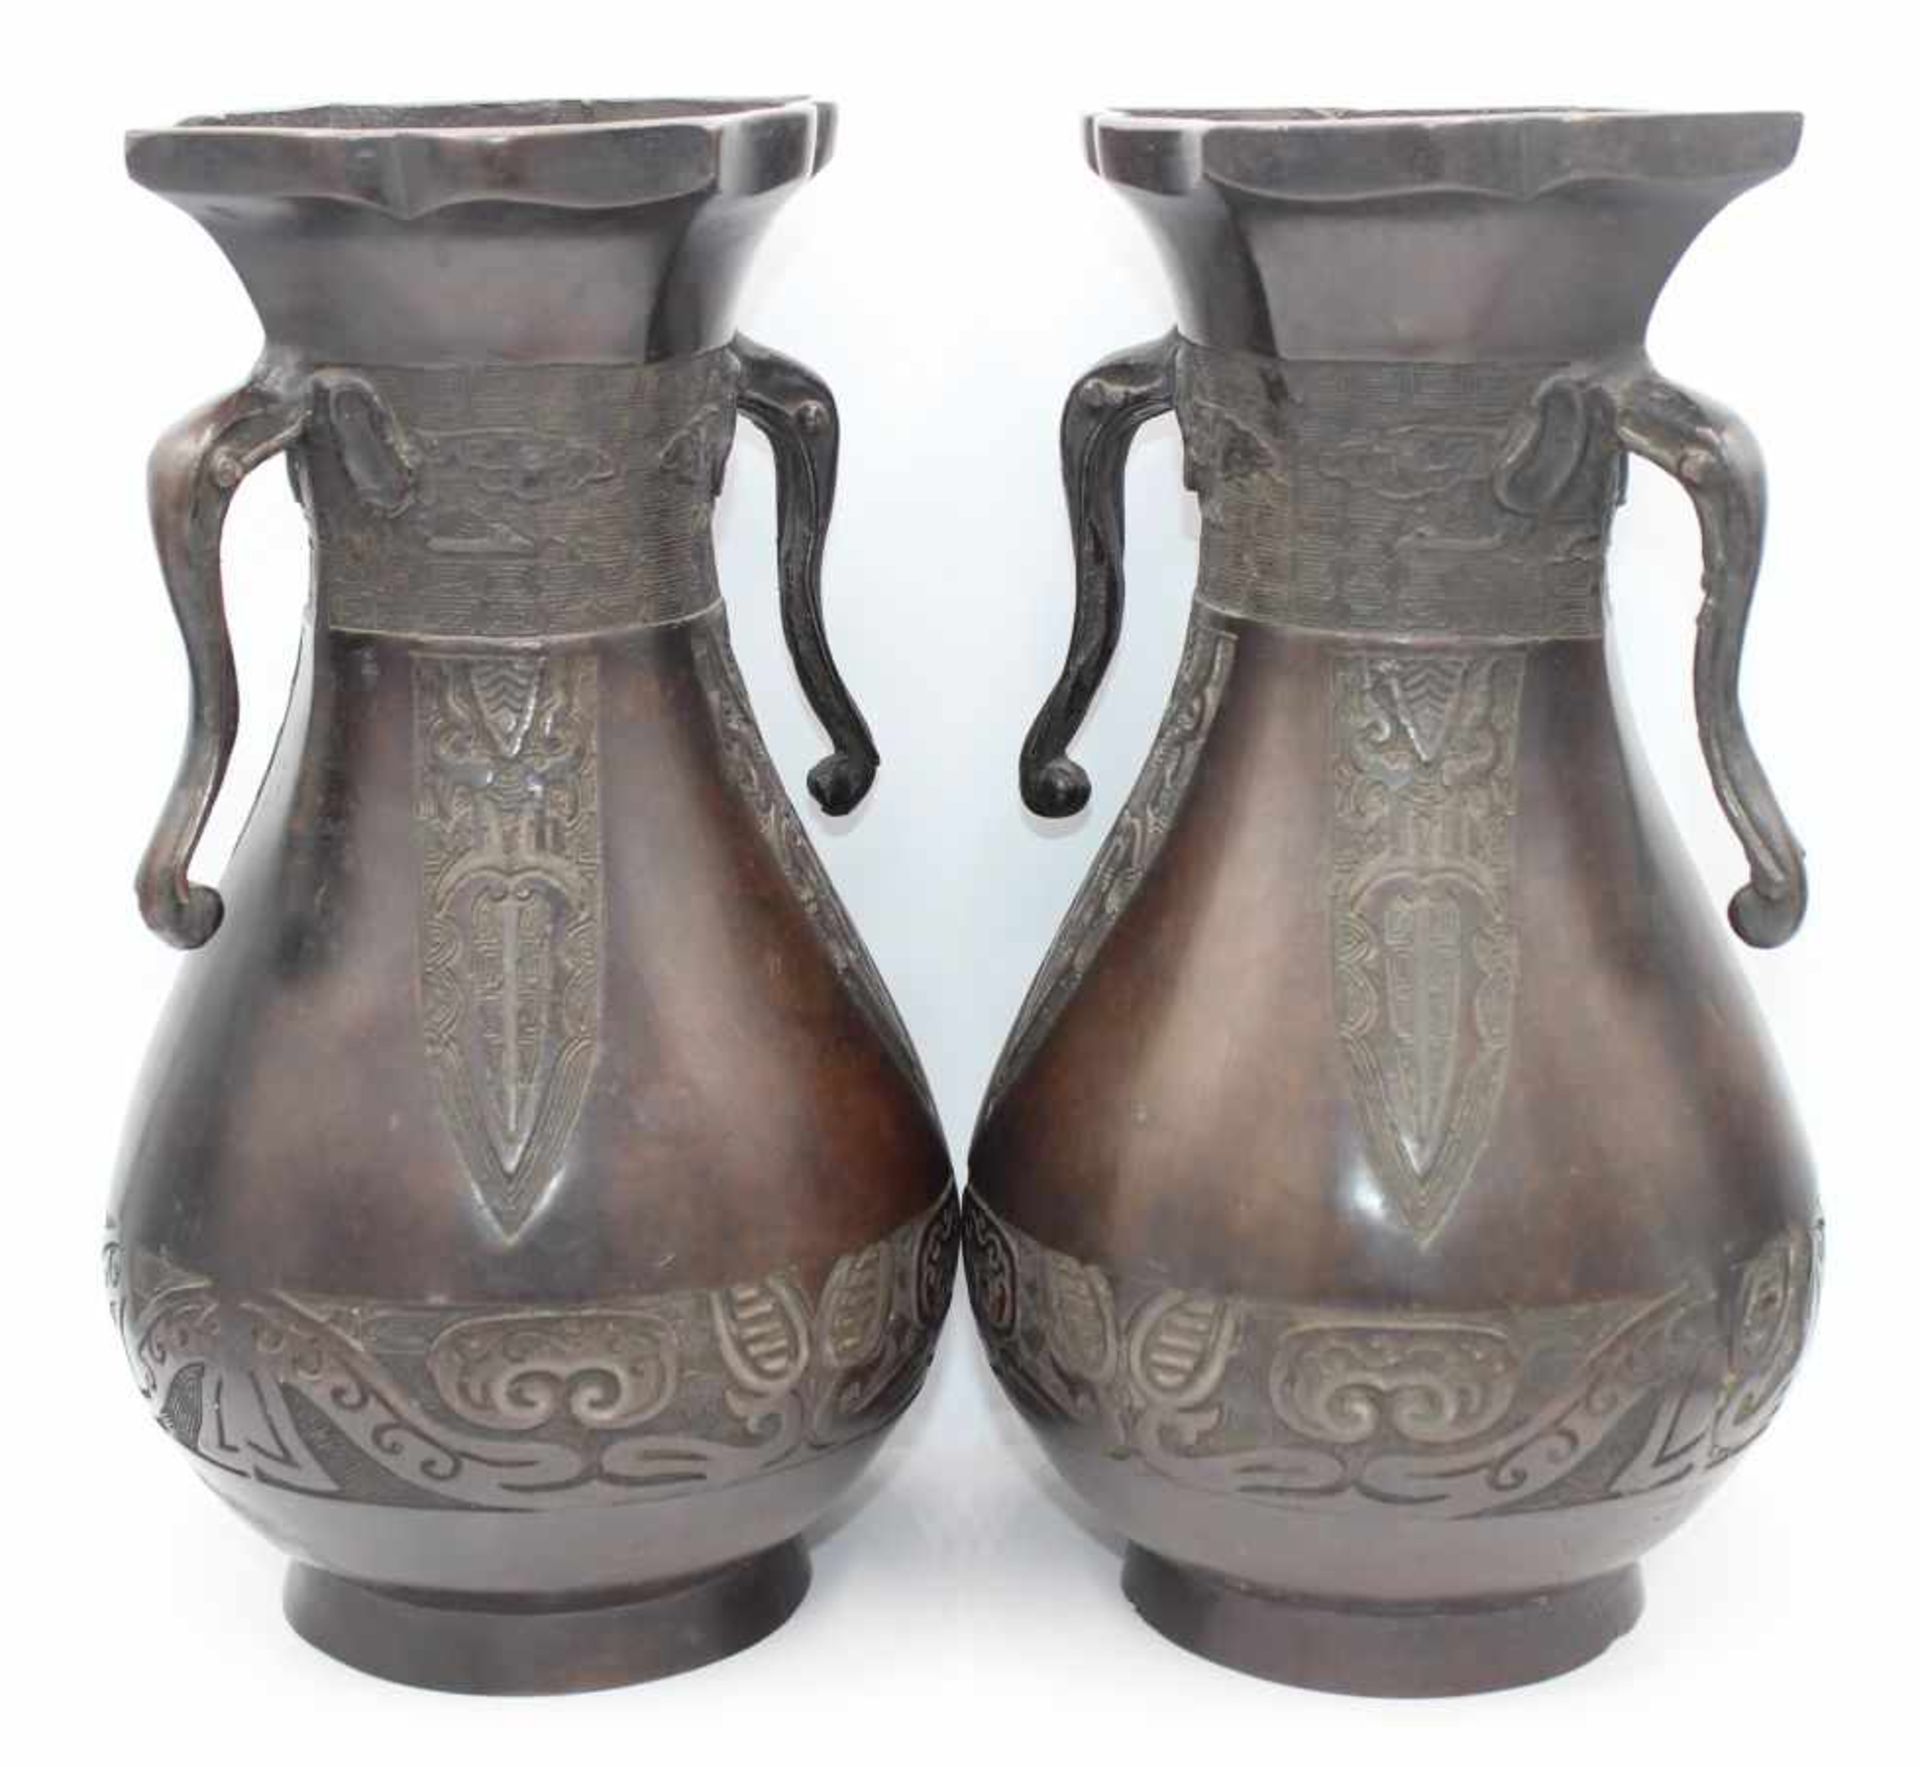 Paar Vasen - wohl China nach 1900 Bronzekorpus mit Reliefdekor, gemarkt, seitl. Handhaben als